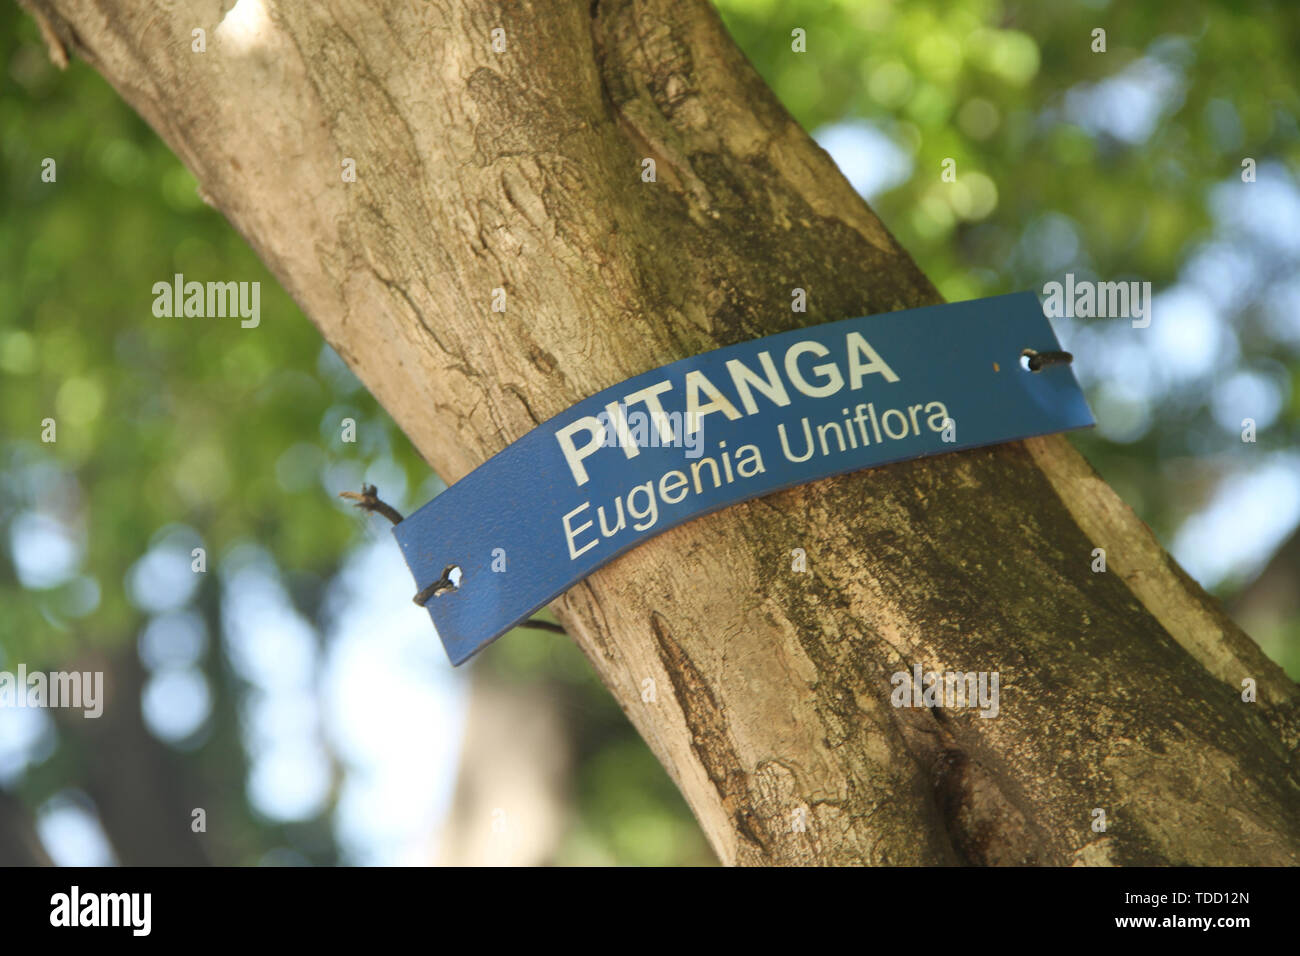 Pitanga, Eugenia uniflora tree, São Paulo, Brazil Stock Photo